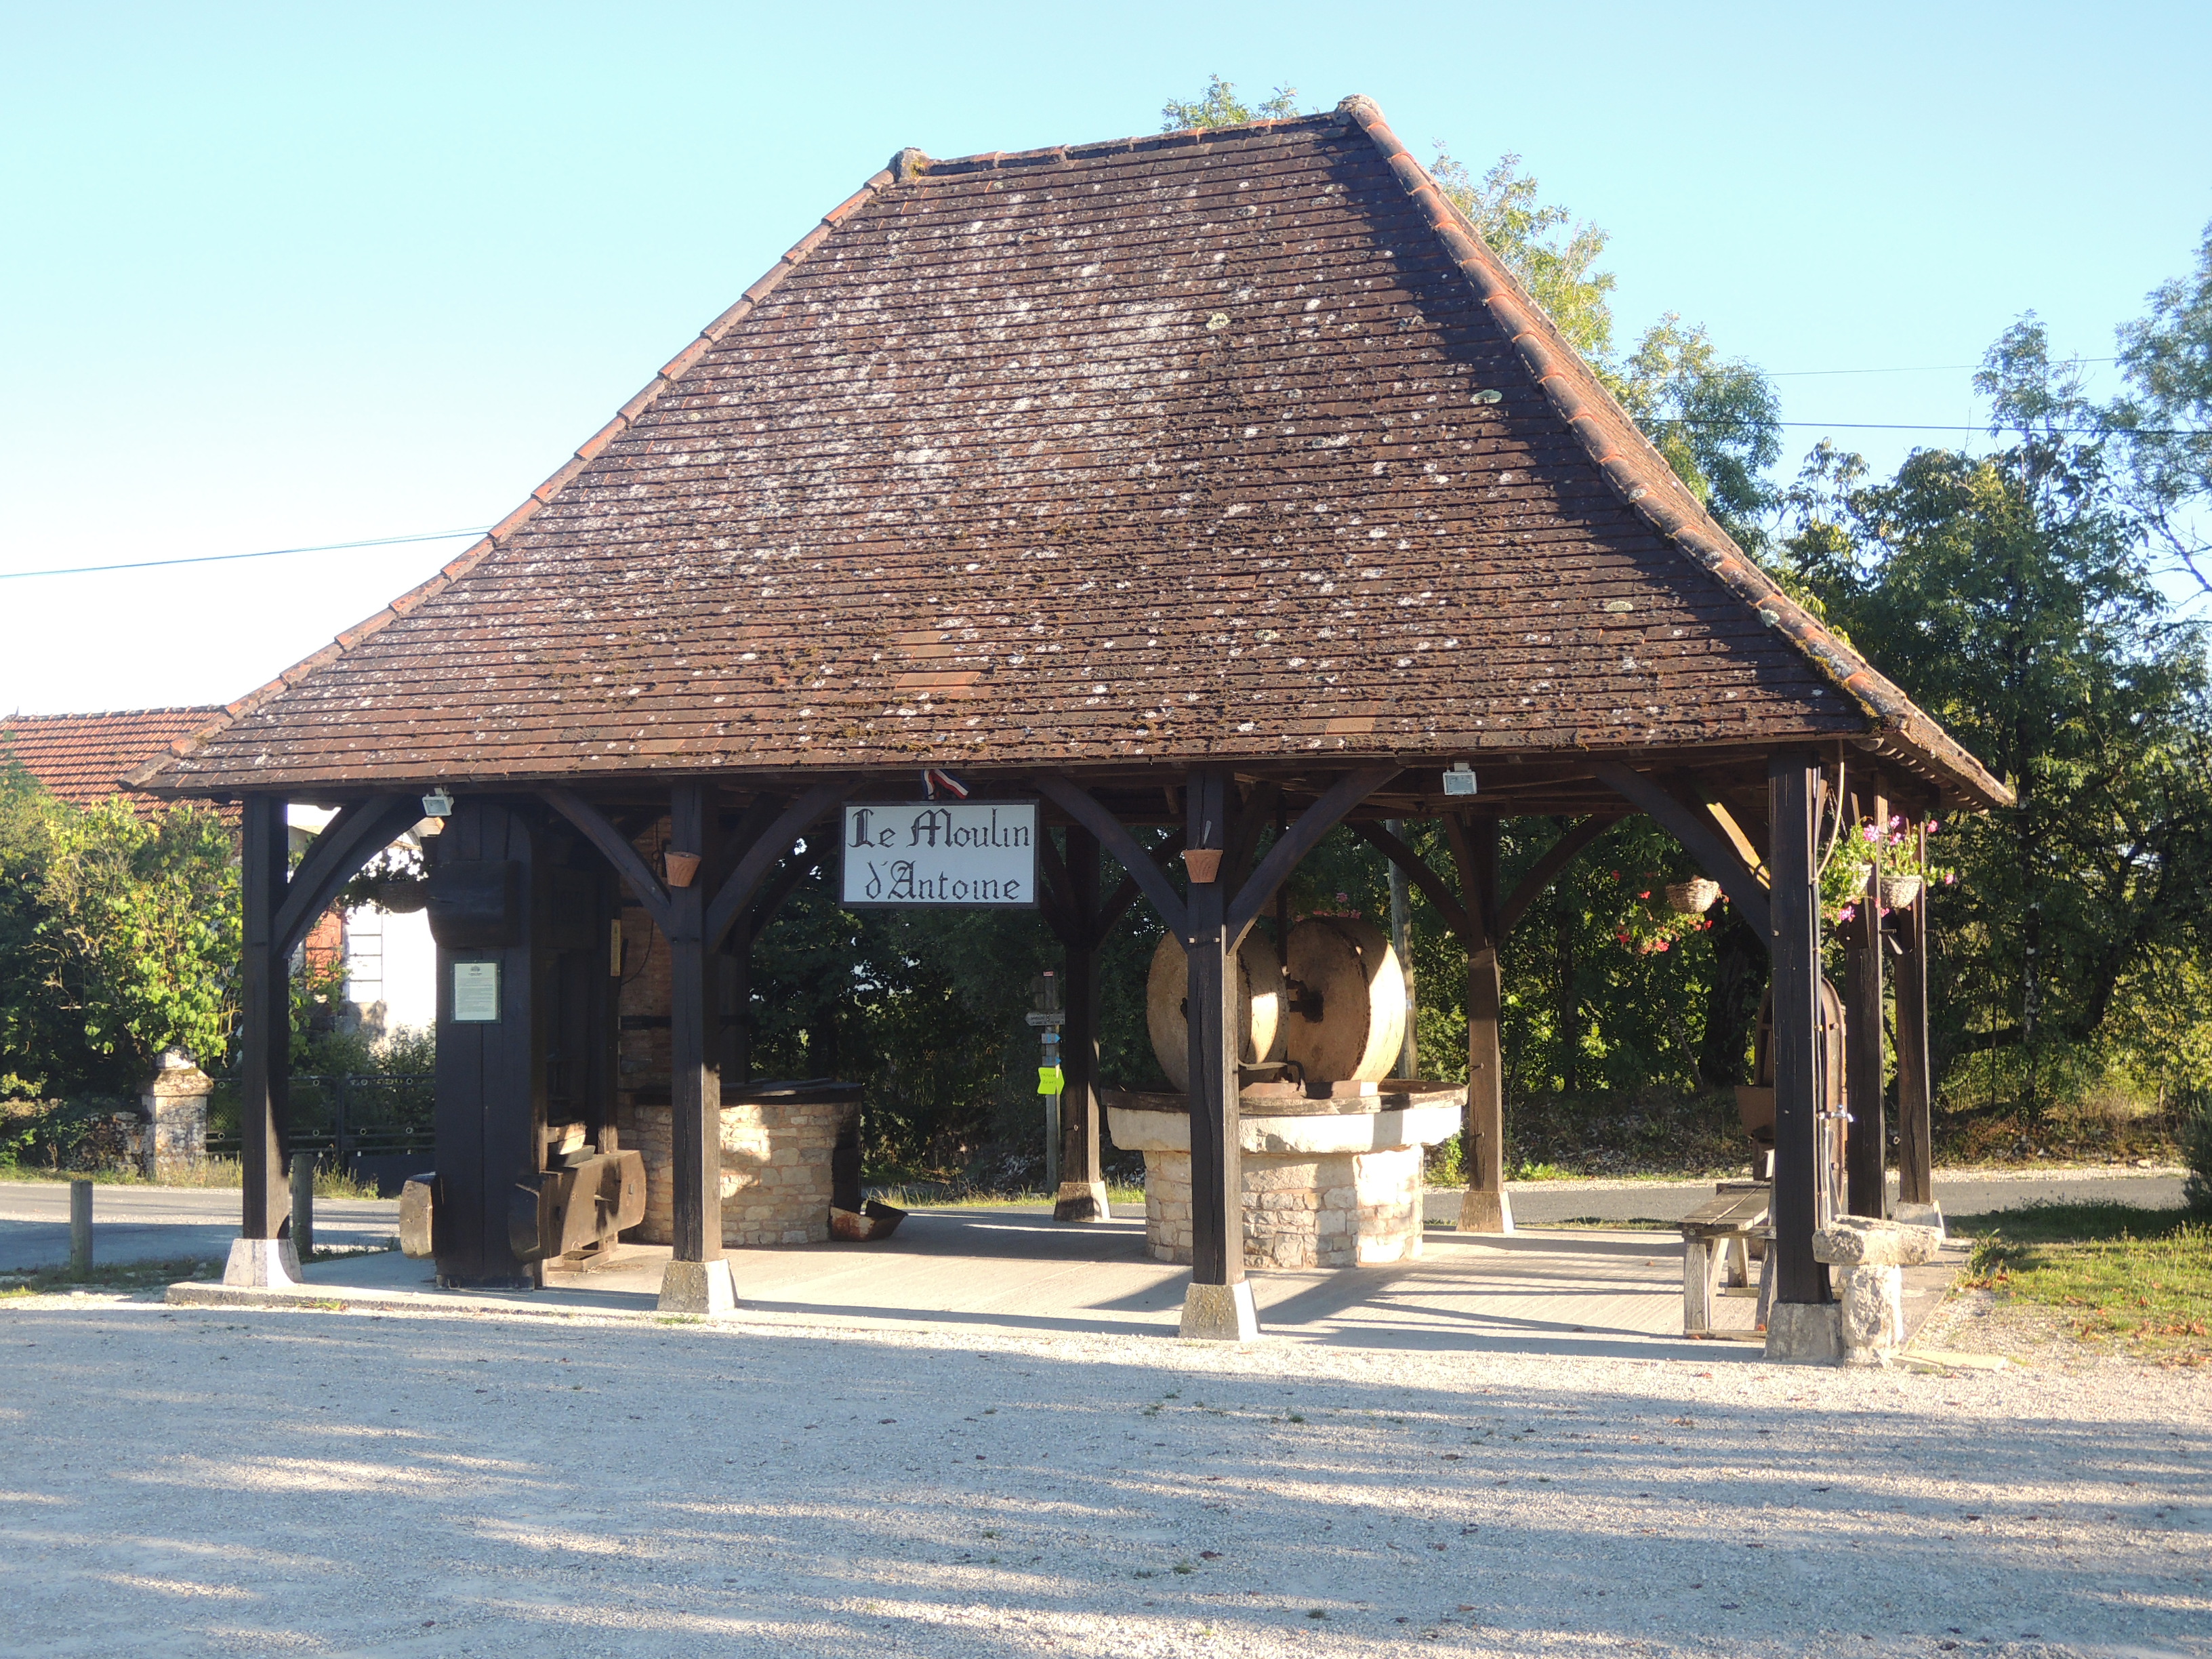 Le Moulin d'Antoine  - Visite et démonstration